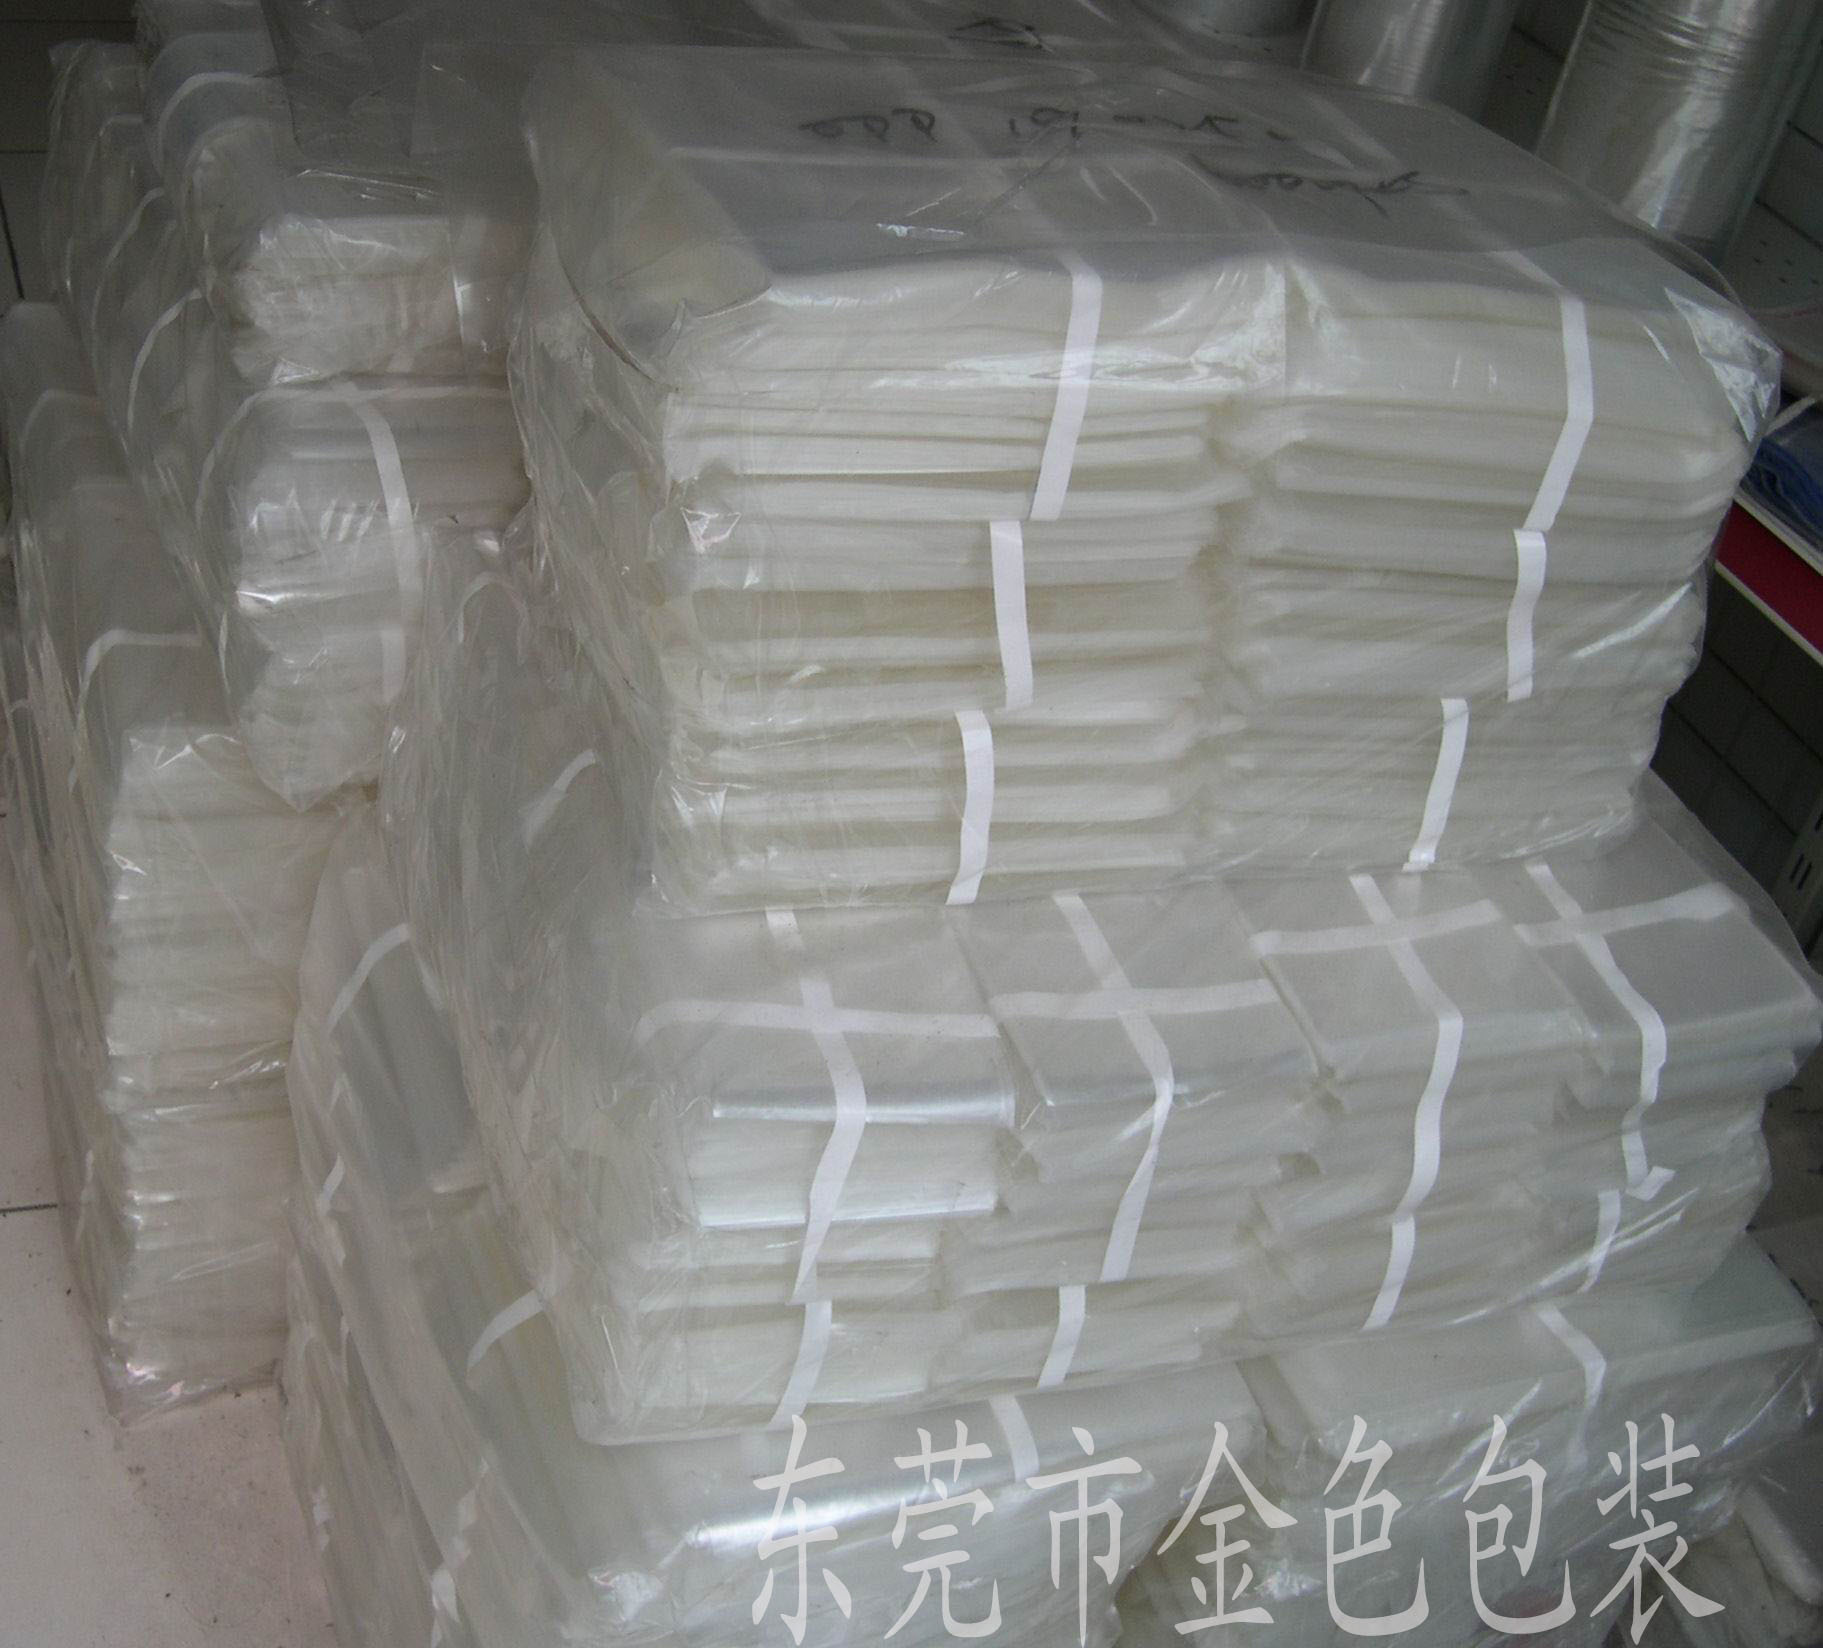 中国塑料包装30强_2021中国塑料包装机械展会_中国包装技术协会塑料包装